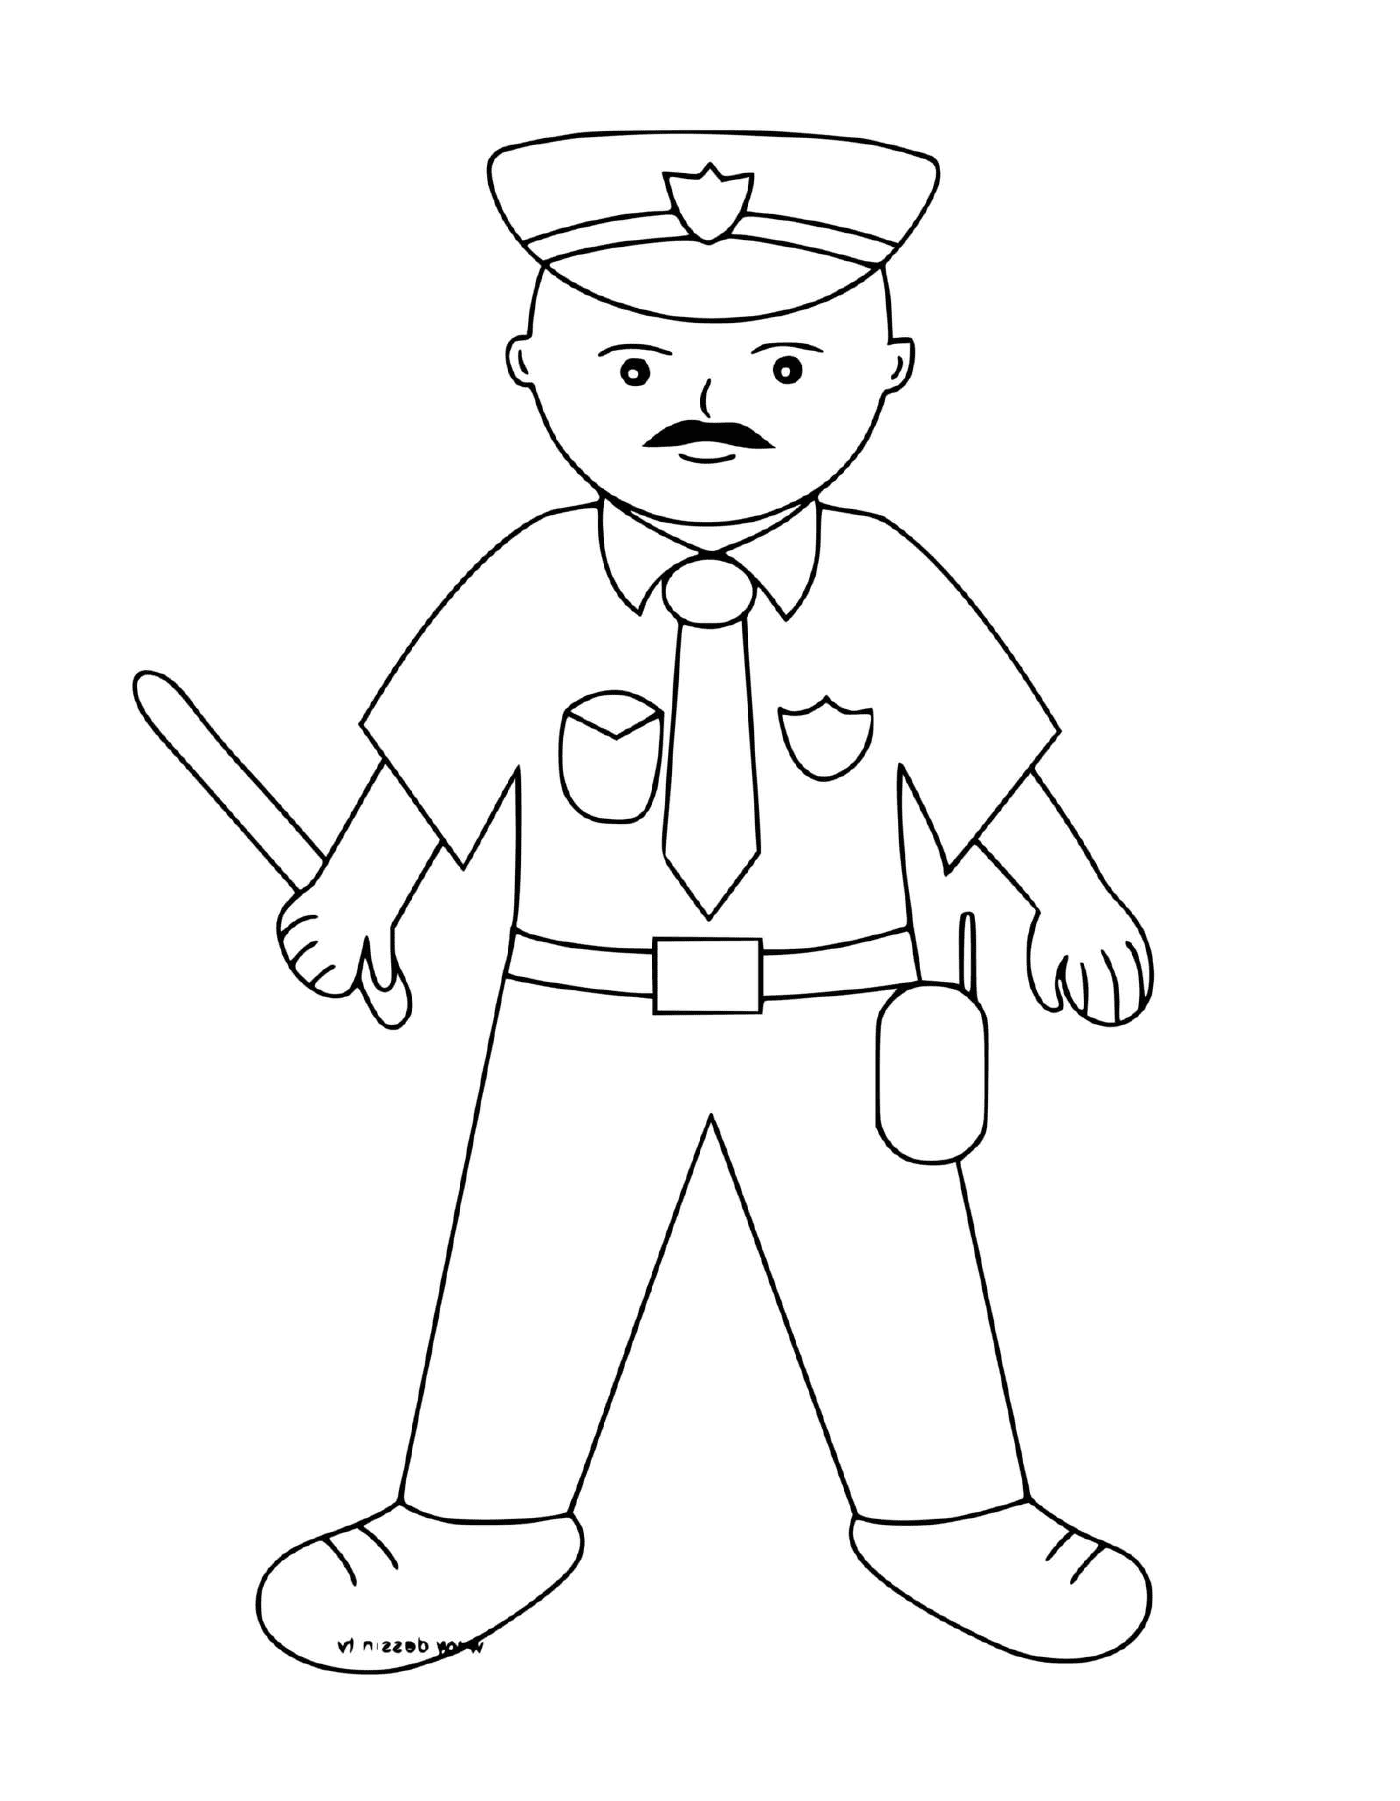  Полицейский с дубинкой в руке 